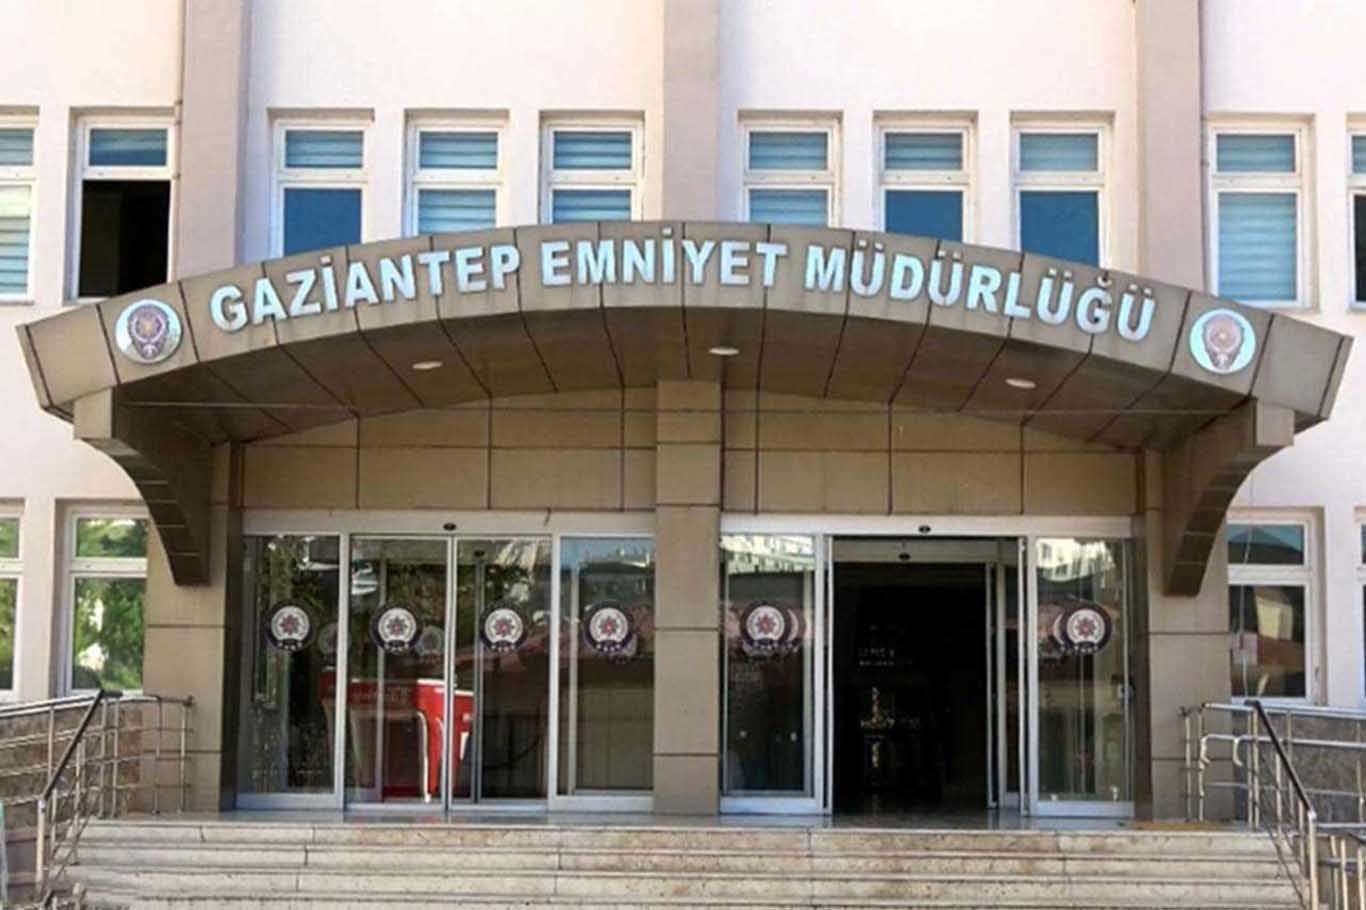 Gaziantep'te çeşitli suçlardan aranan 8 kişi yakalandı